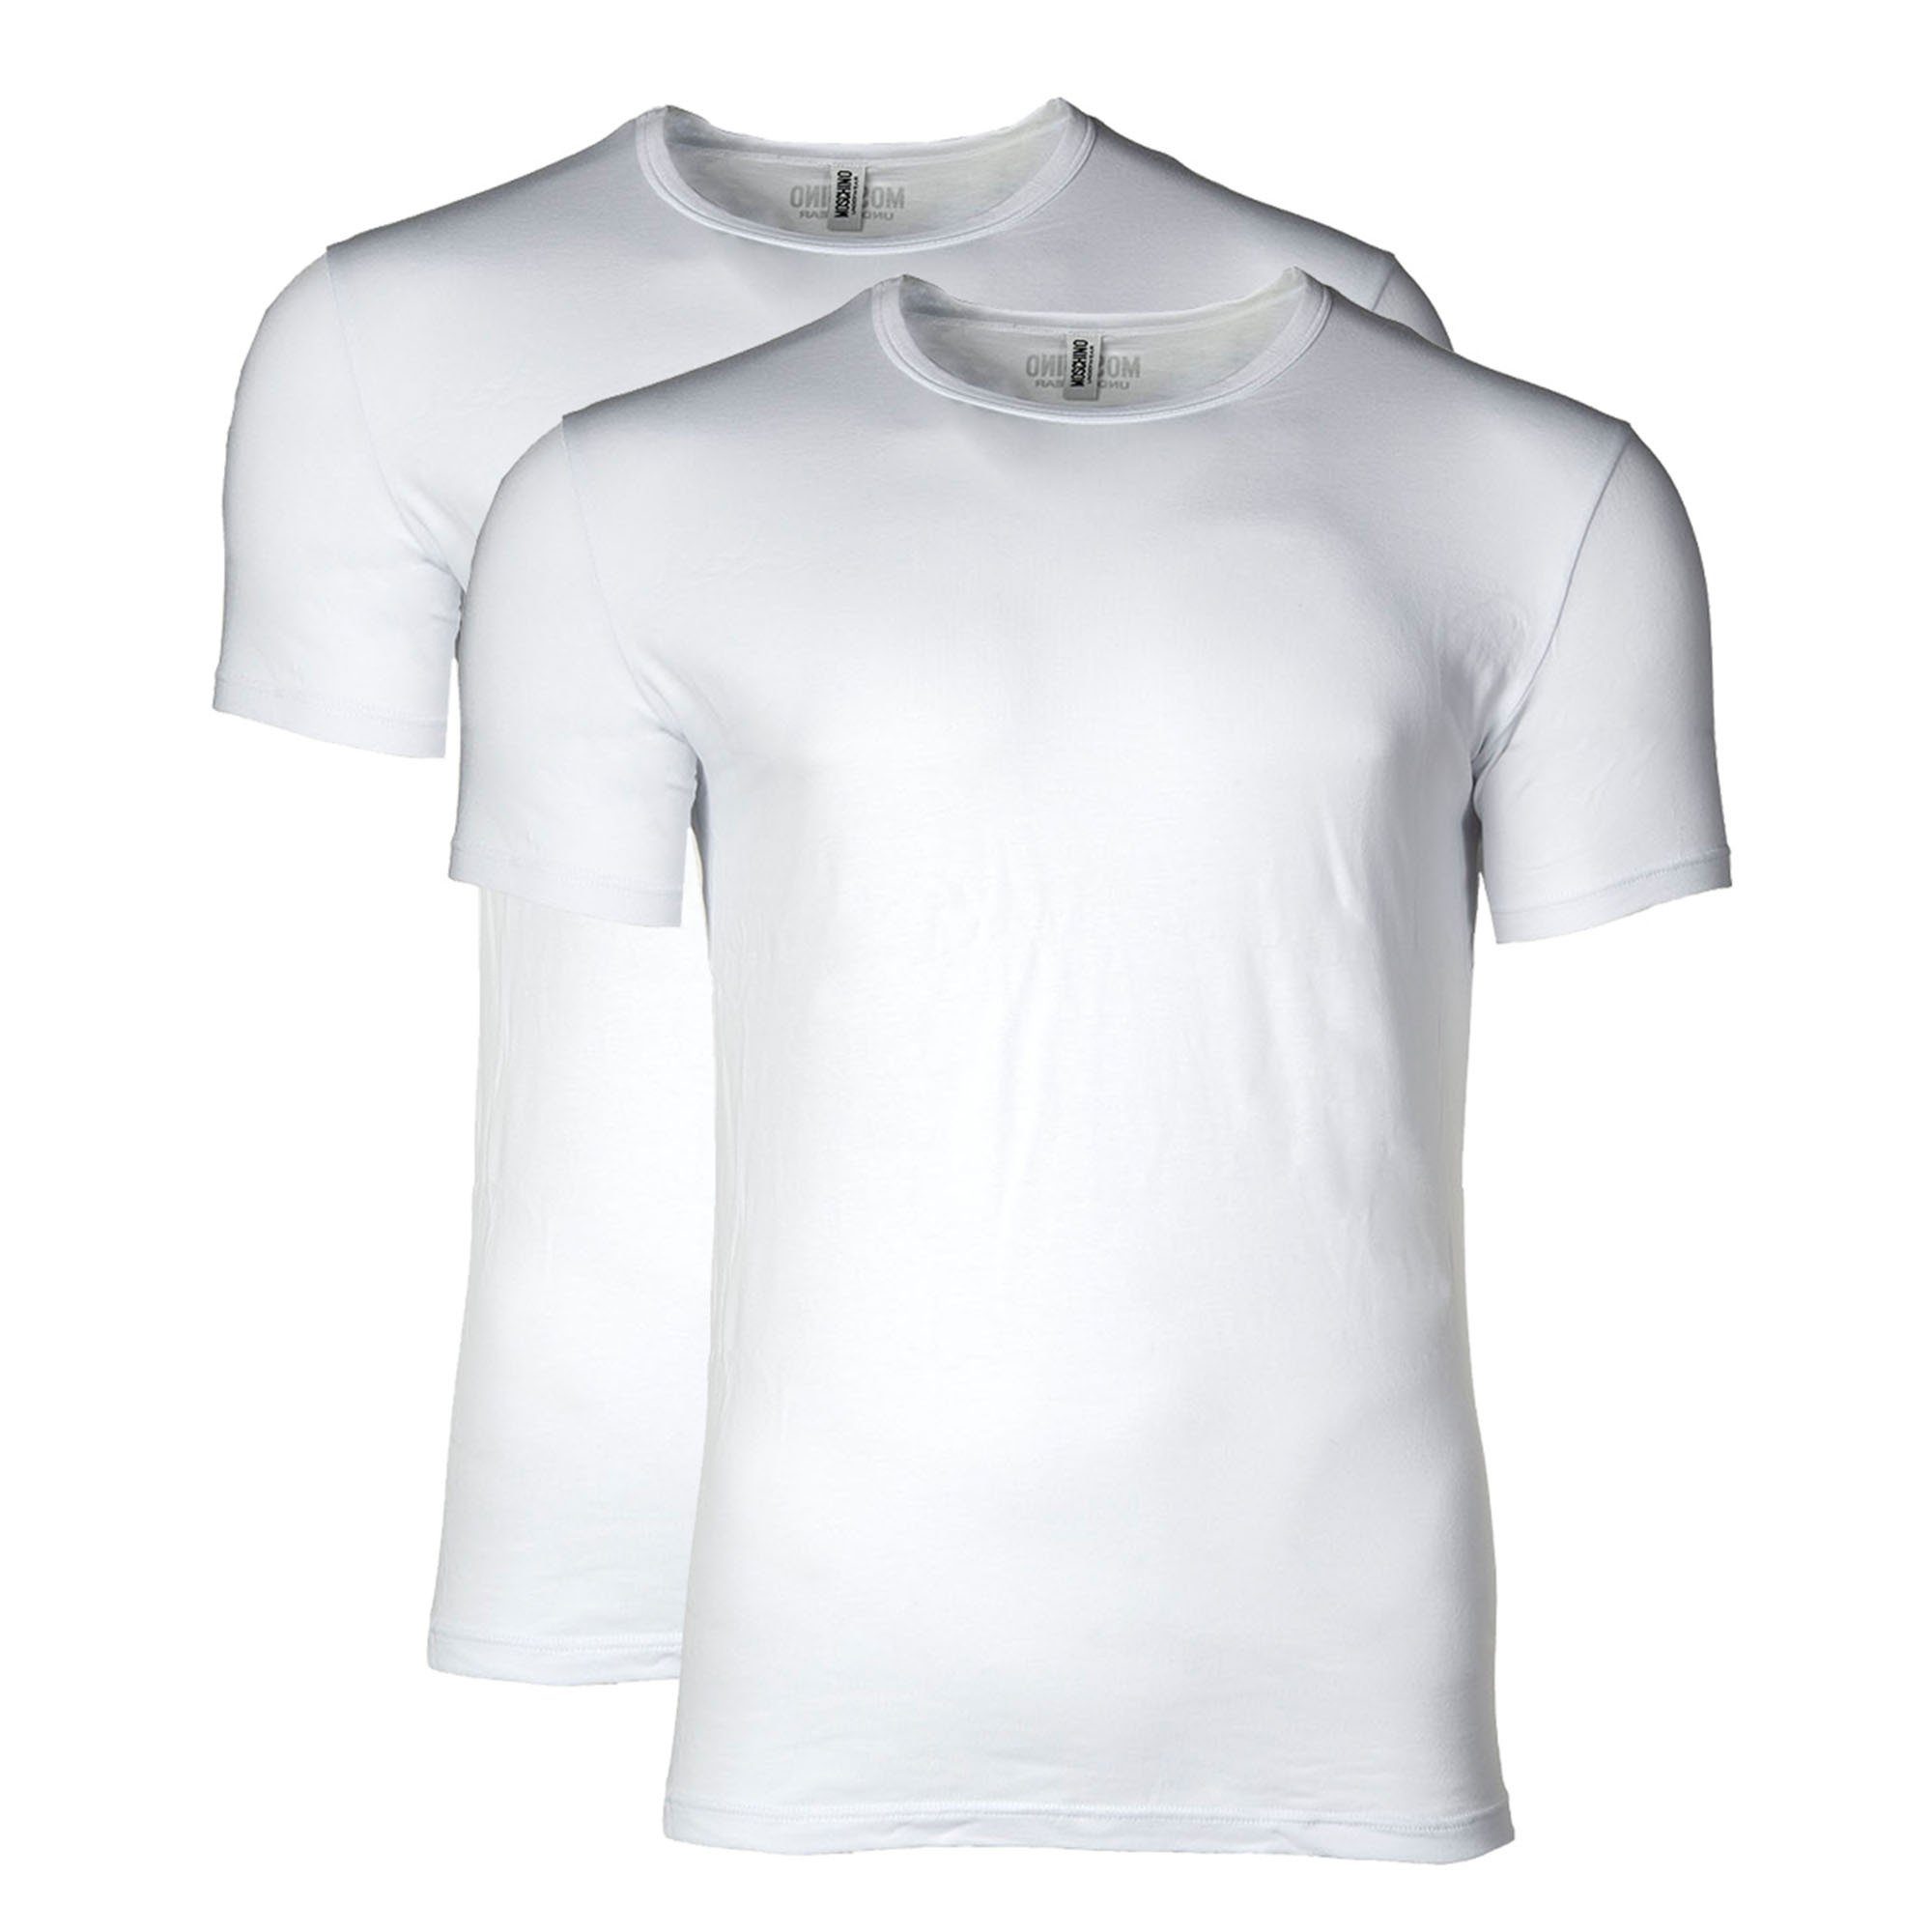 Moschino T-Shirt Herren - 2er T-Shirt Rundhals Pack Neck, Crew Weiß